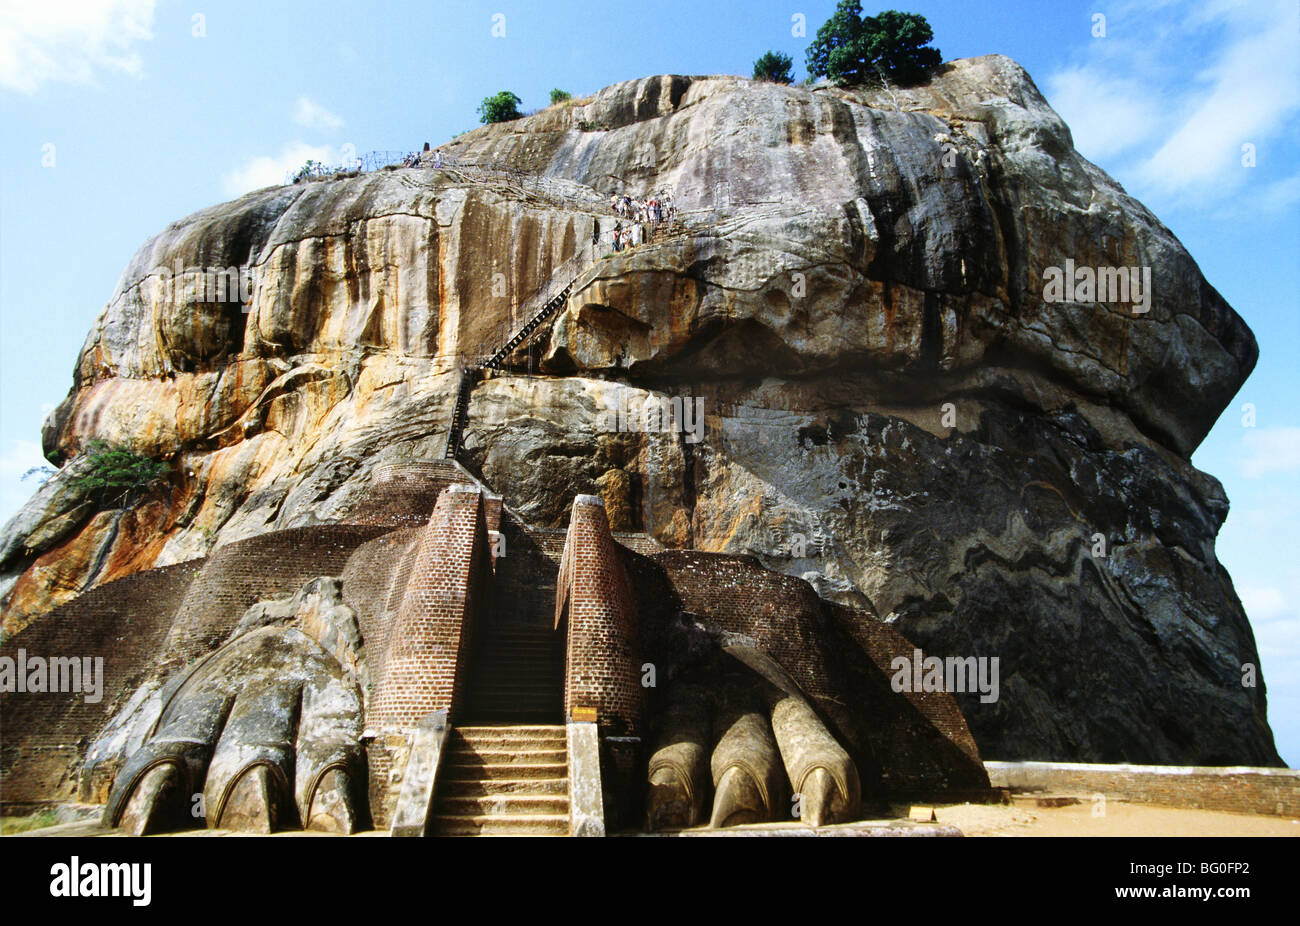 Sigiriya, le 5e siècle, la citadelle de roche contenant des ruines du complexe de palais construit par le roi Kasyapa au 5ème siècle, Sri Lanka Banque D'Images